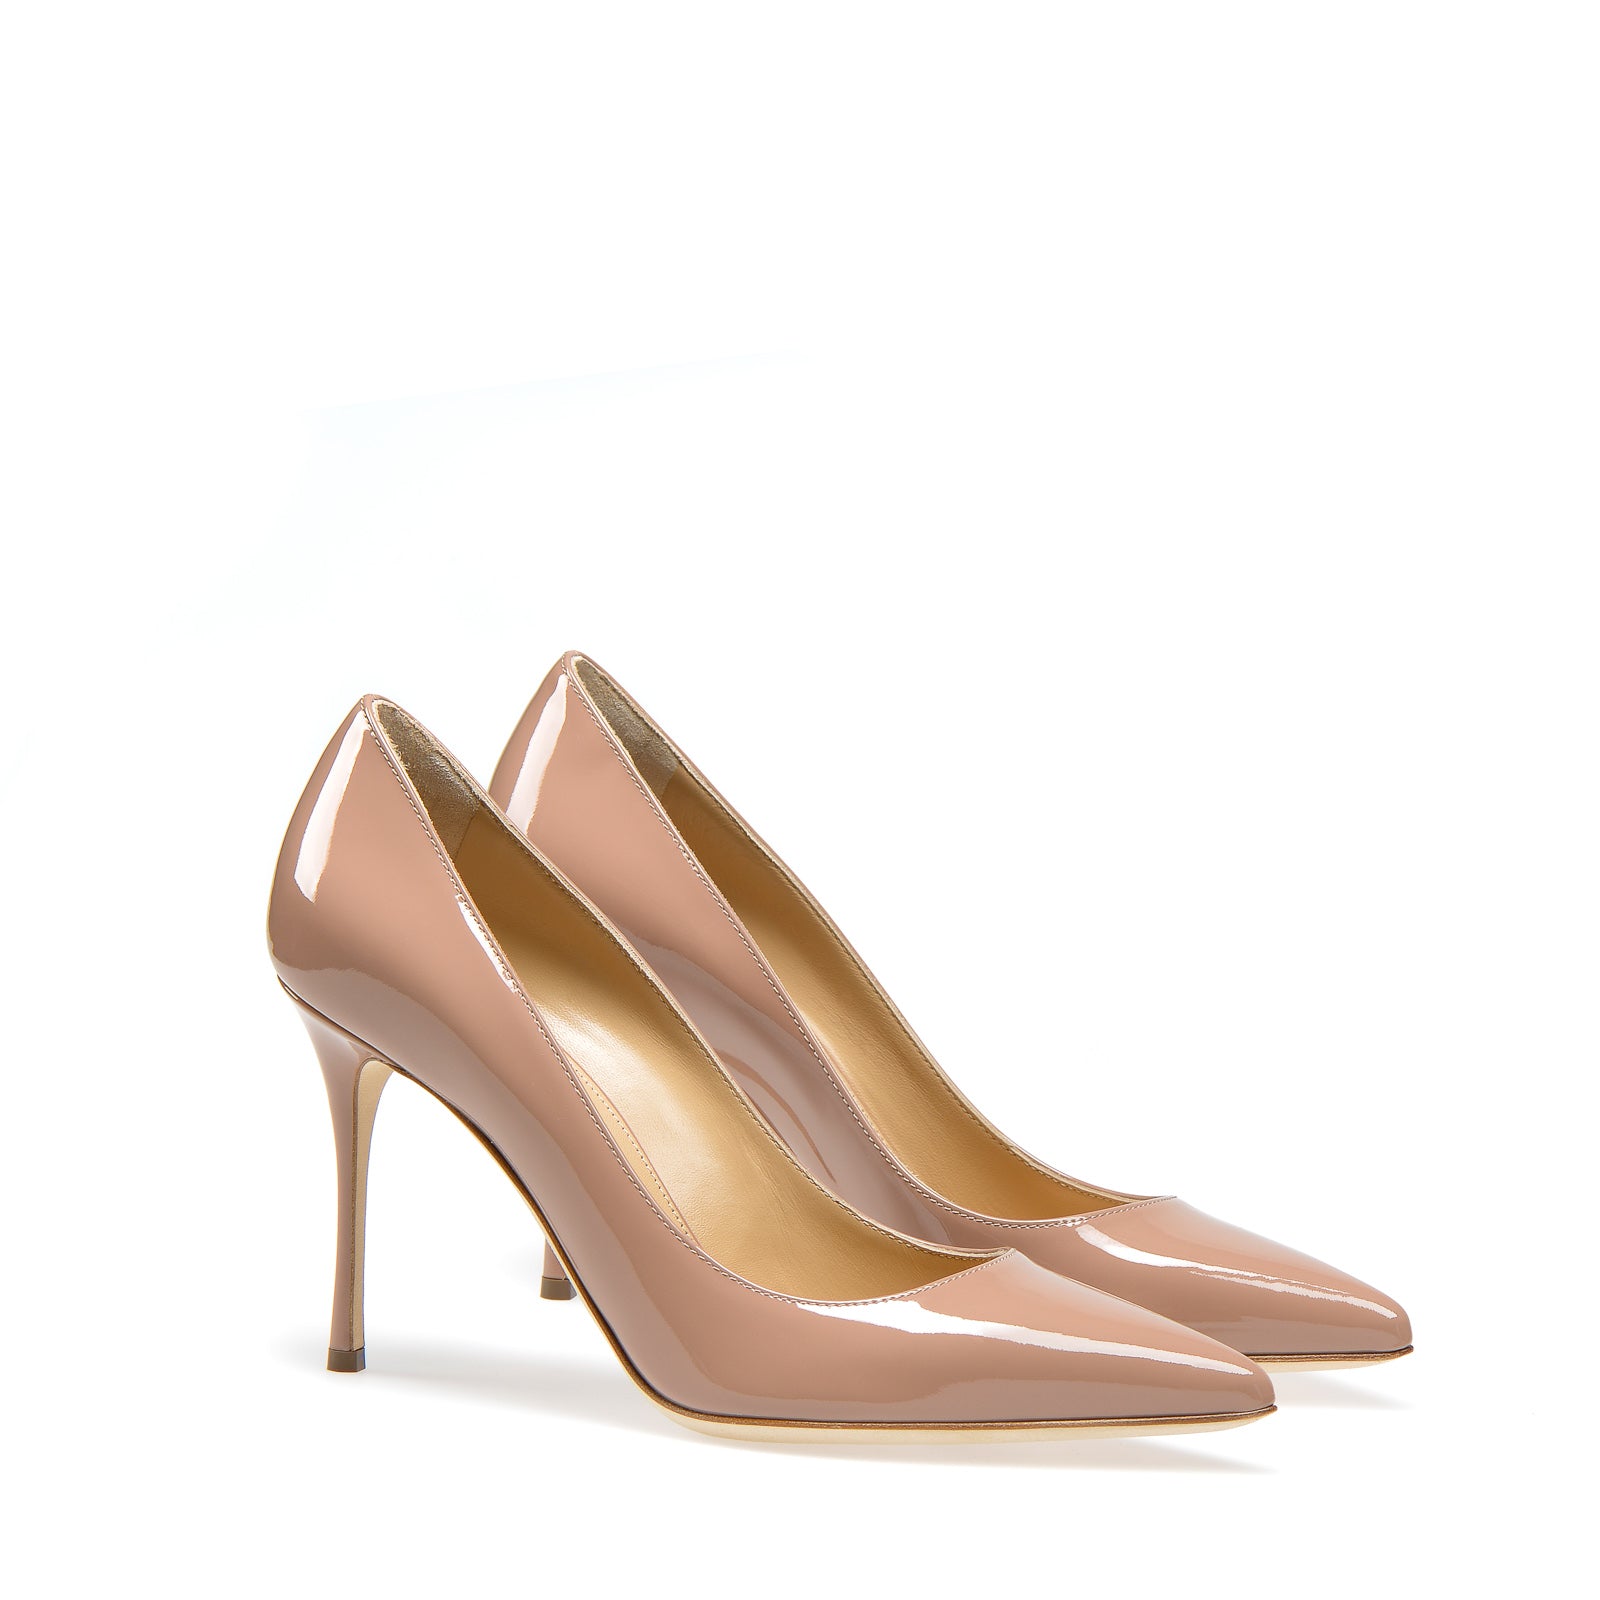 Godiva pump heels in pink/nude